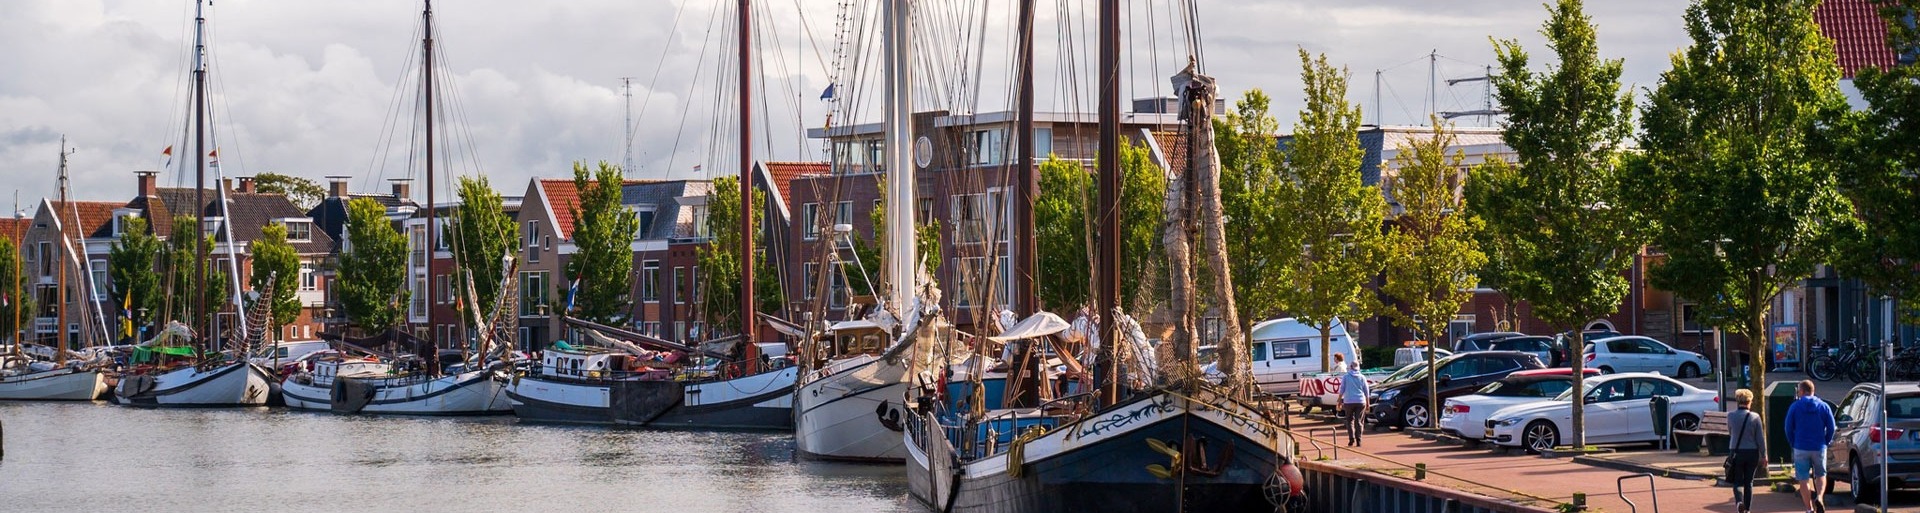 De haven van Harlingen met boten in het water